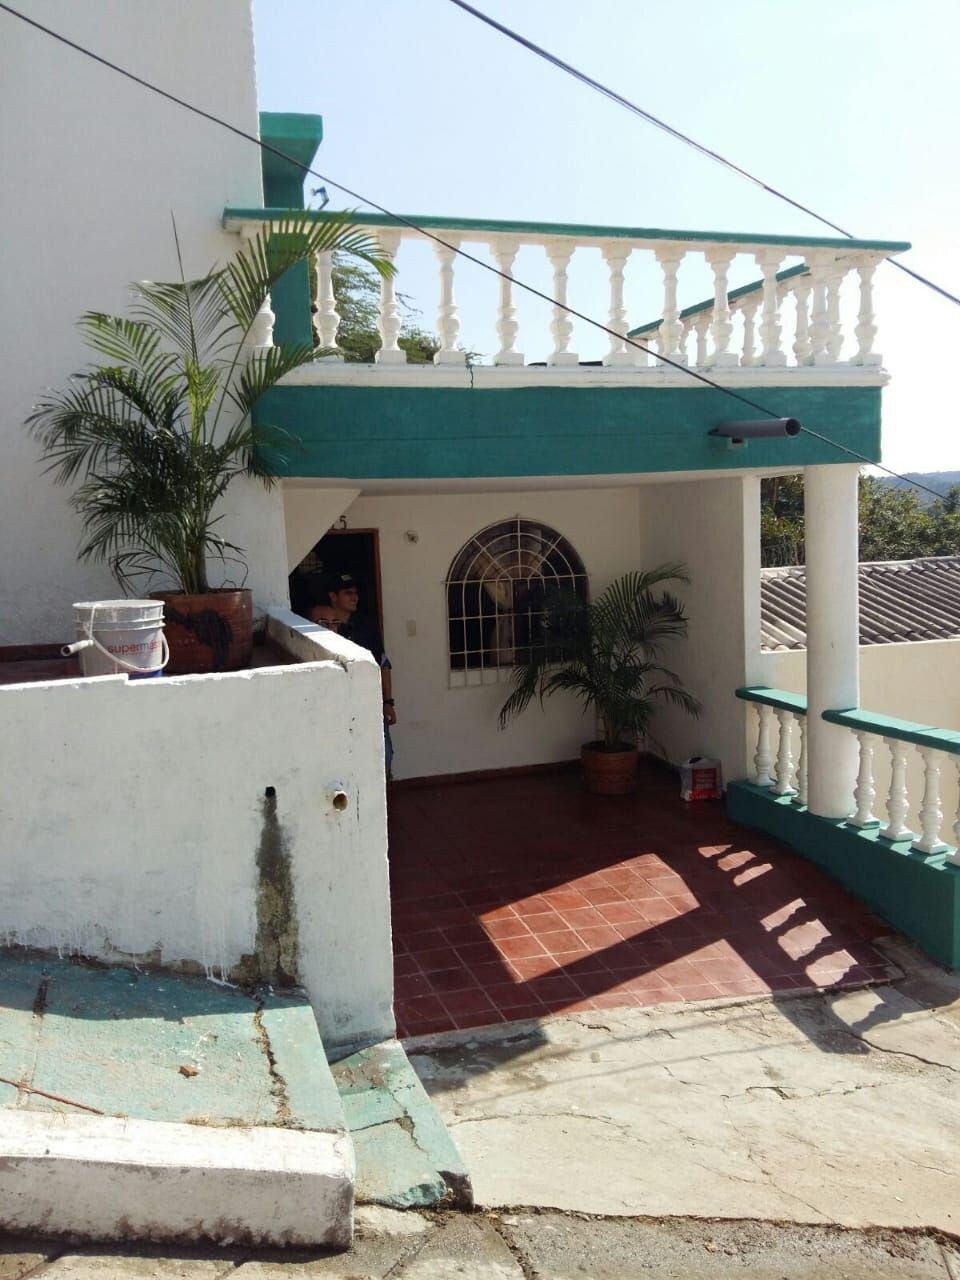 Casa acojedora y familiar en Santa Marta Colombia.